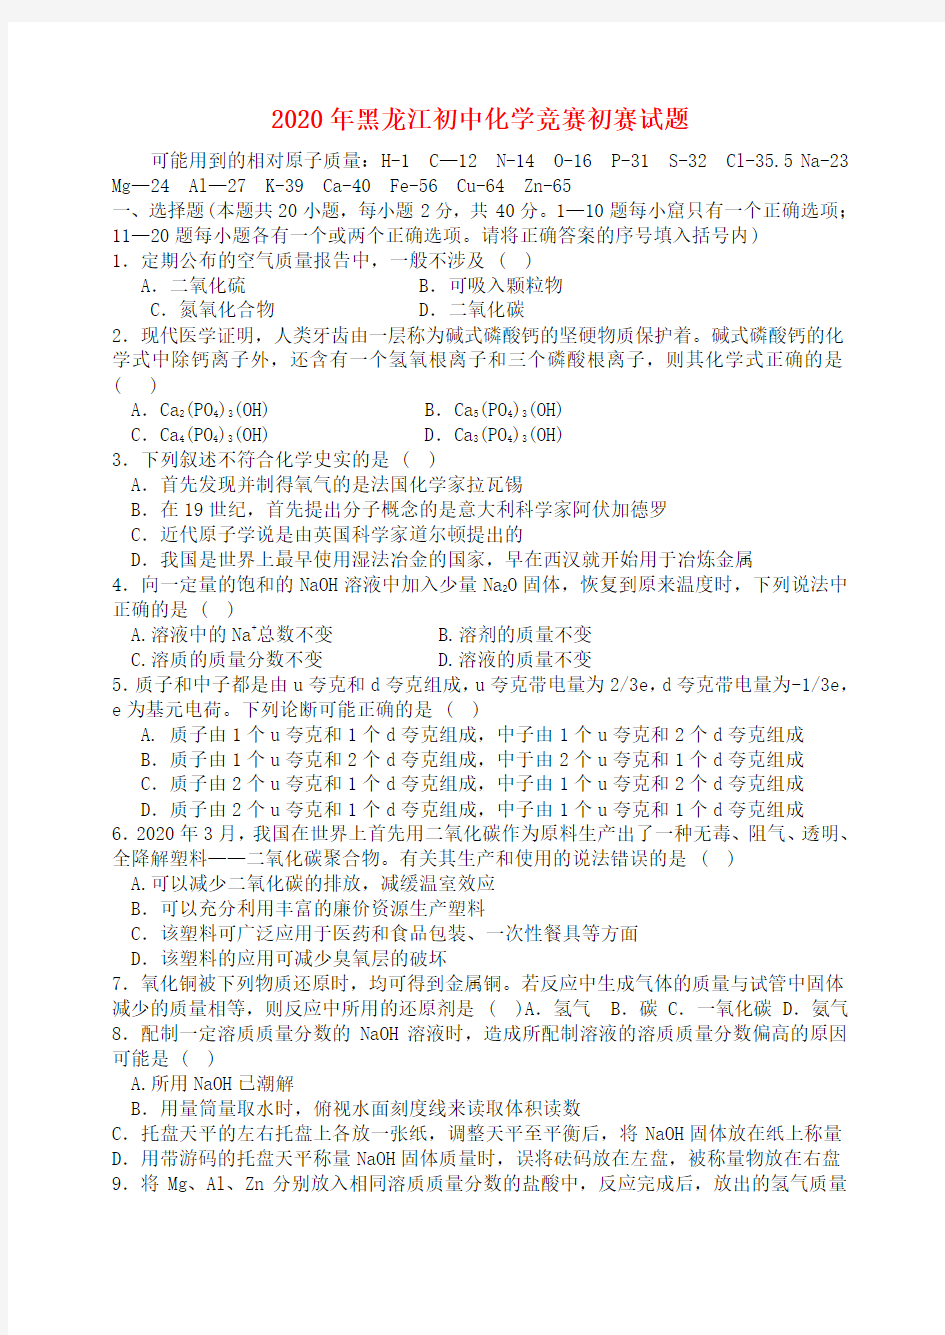 黑龙江省2020年初中化学竞赛初赛试题